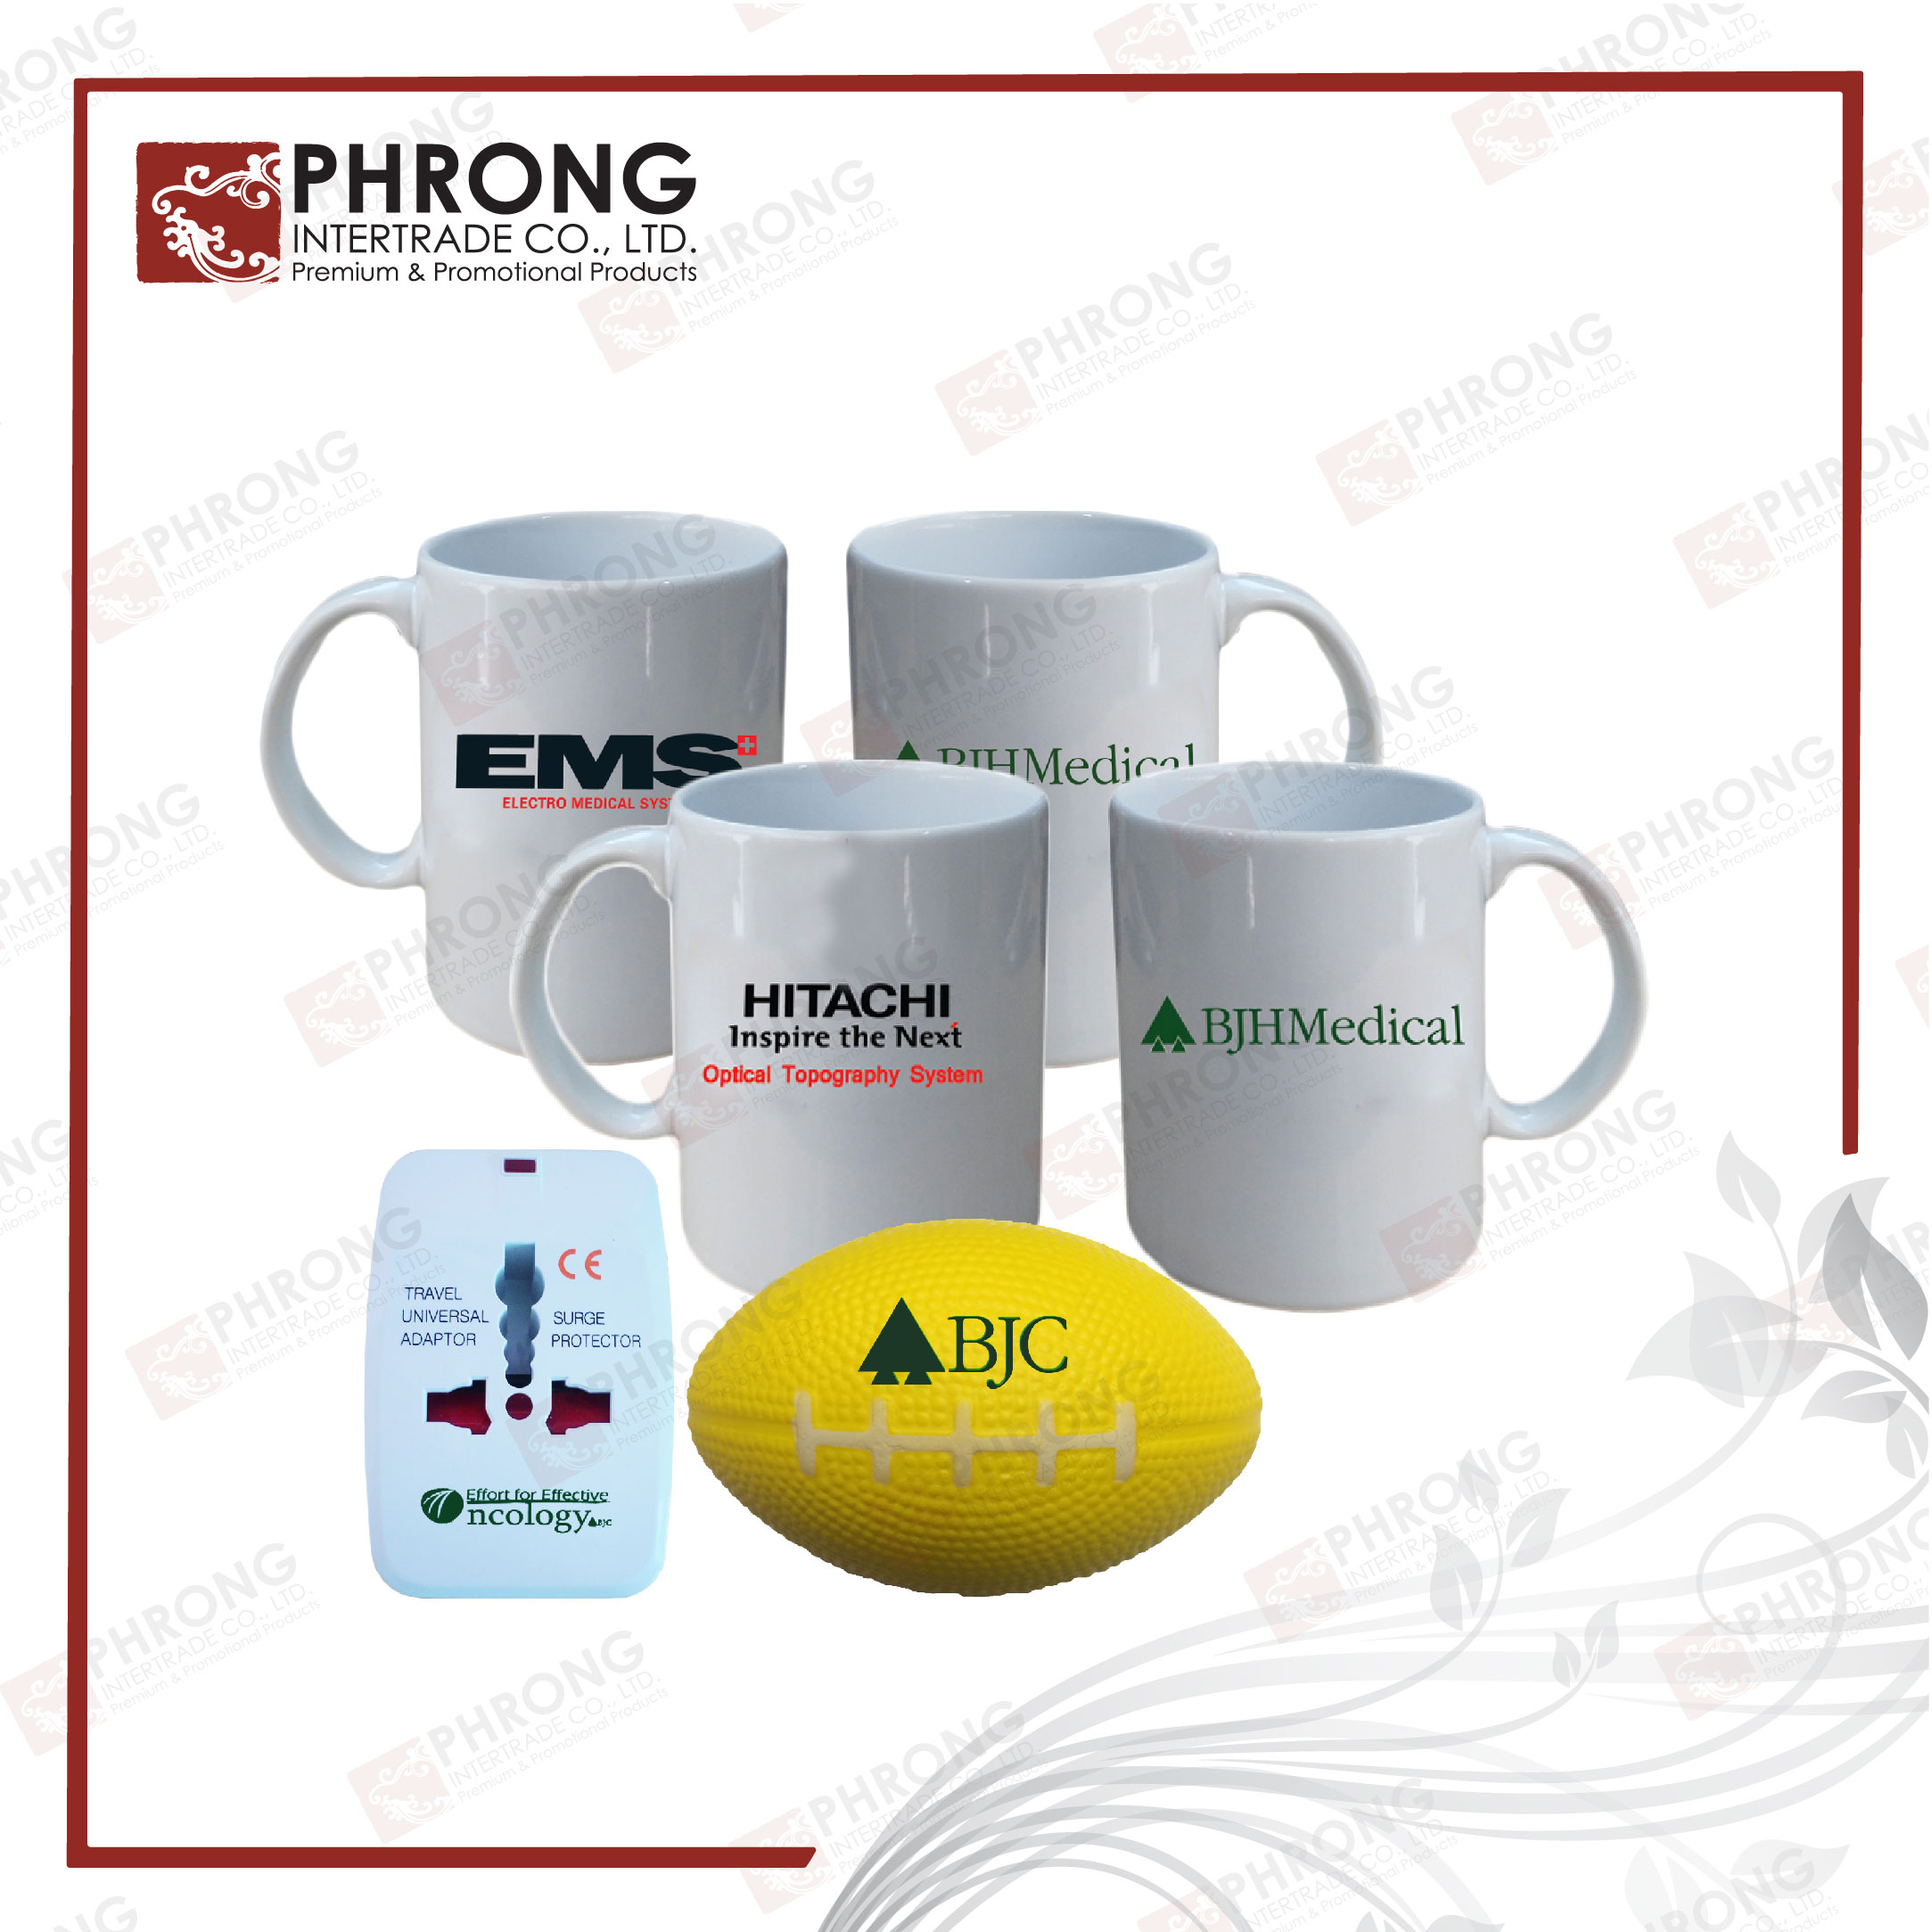 ของพรีเมี่ยมeco #Phrong #PhrongIntertrade #ของพรีเมี่ยมรักษ์โลก #งานสั่งทำ งานสั่งผลิด สั่งผลิของพรีเมี่ยม #ผลิตของแจก #ของแจกเก๋ # พรีเมี่ยม #promotionalproducts #promotionalmerchandise #ของพรีเมี่ยม #สินค้าของลูกค้า #ส่งเสริมการขาย #สินค้าพรีเมี่ยมของที่ #สินค้าส่งเสริมการขาย #ของช่วยยอดขายสินค้า #ของฝากของแท้ #ของฝาก #สินค้าแจกพนักงาน #ของขวัญปีใหม่ #ของพรีเบียมเก๋ ของพรีพรีเมี่ยมดี #พรีใบเมียมกิ๊ฟ #greenproduct #ecoproduct #ecogift #gogreen #greengift #greenpromo #BJC